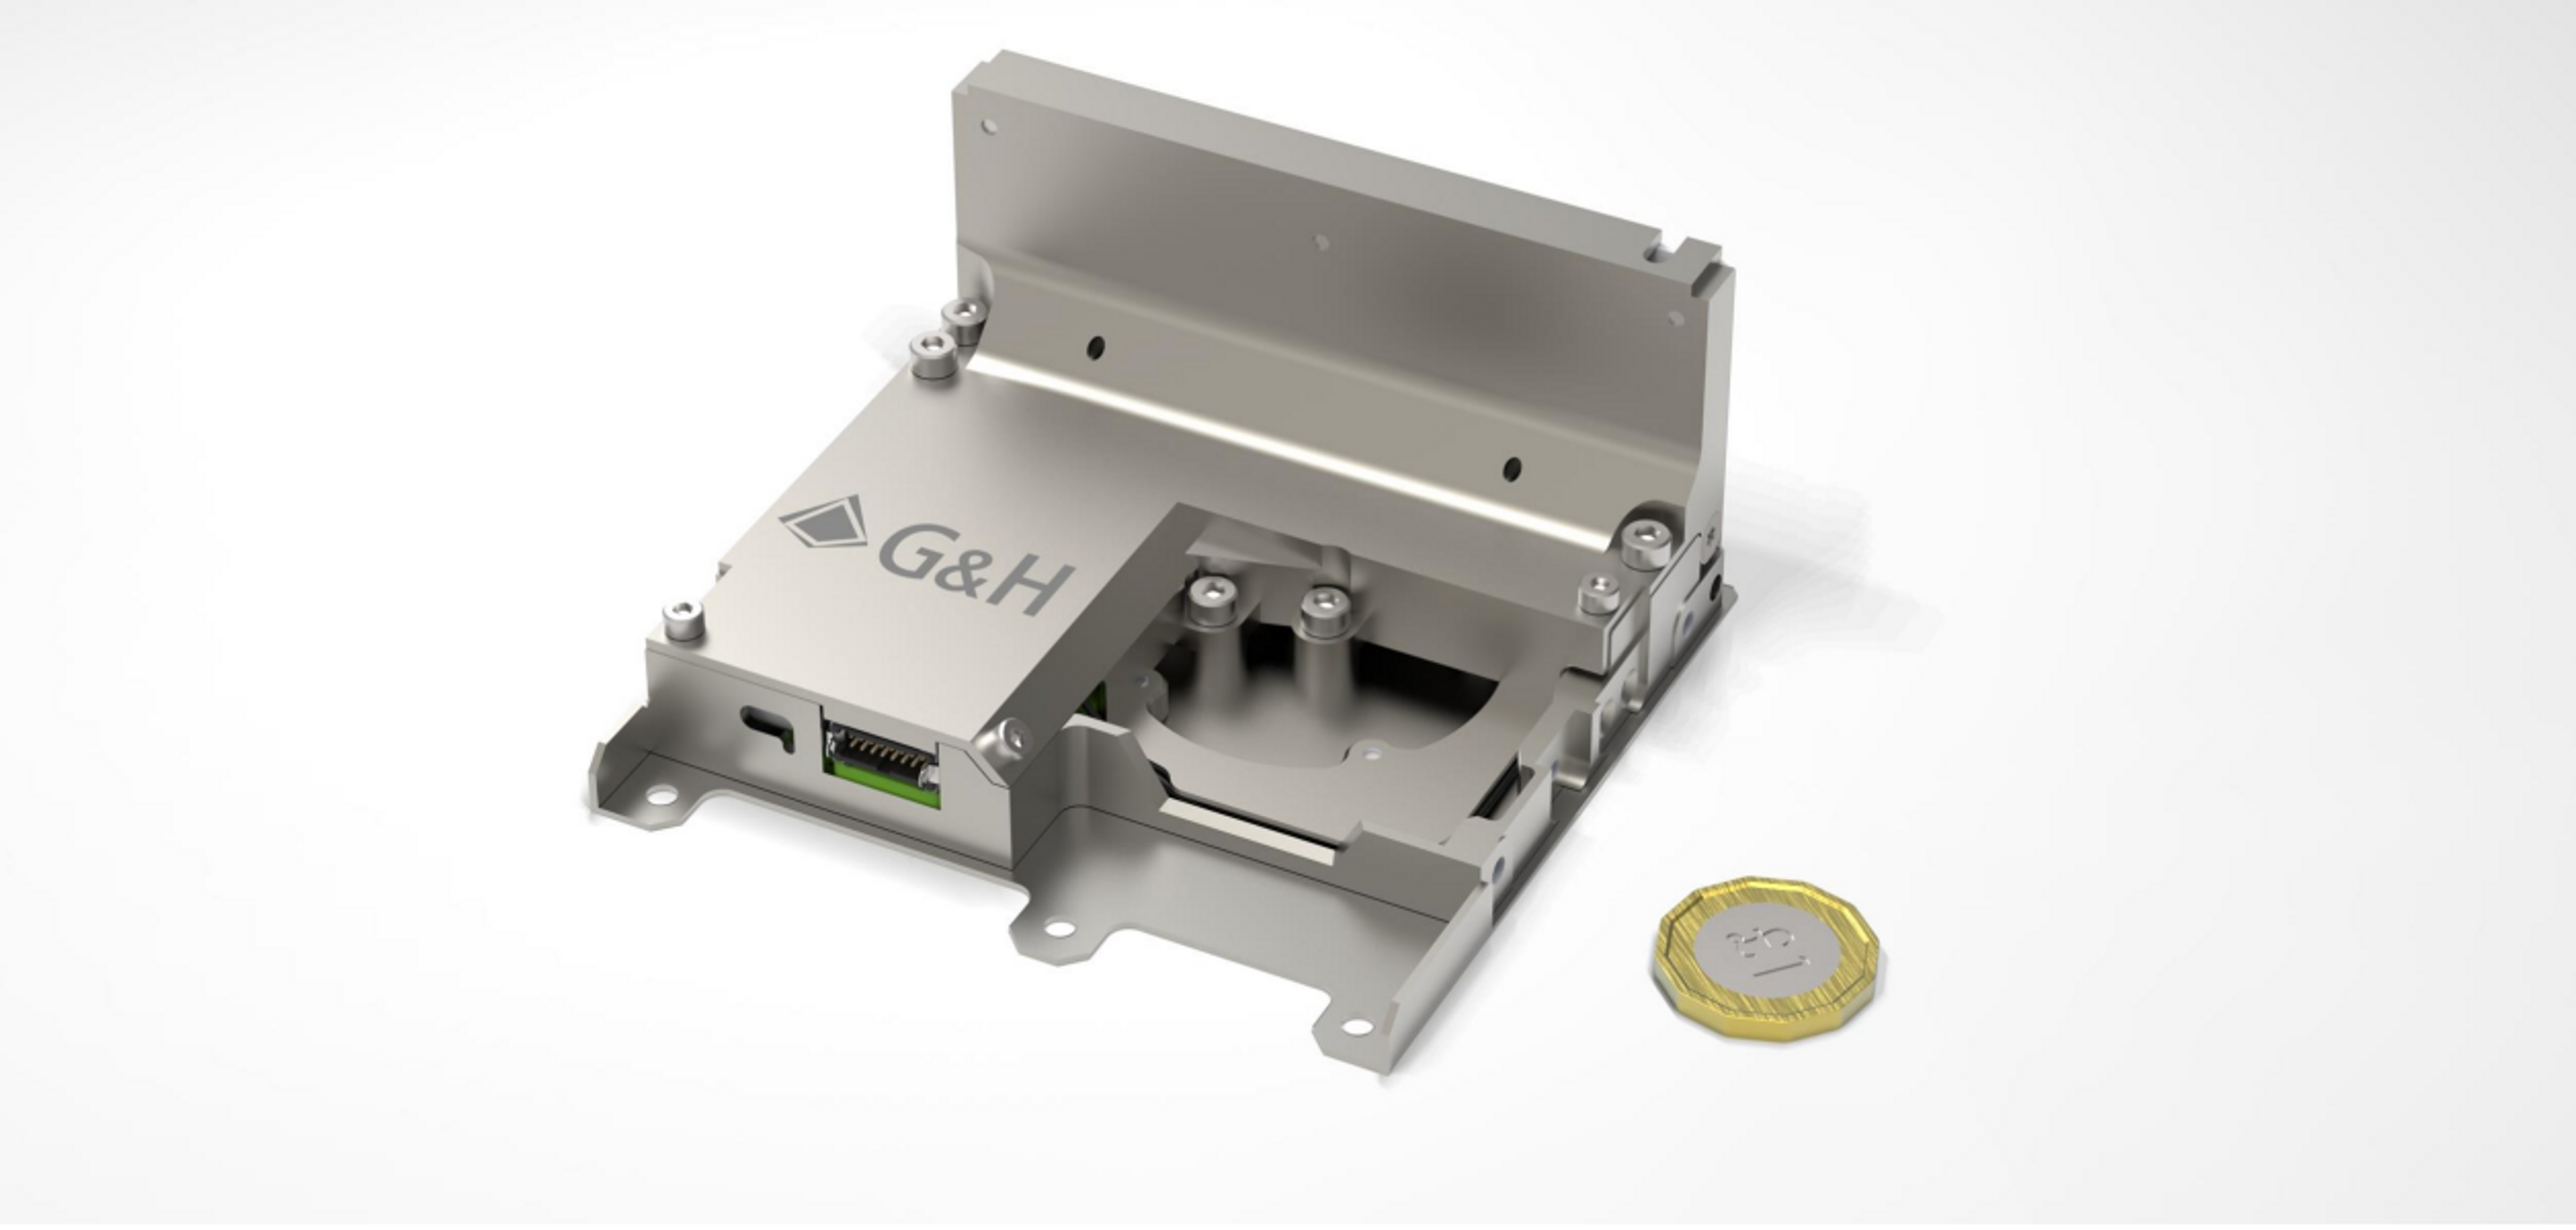 CAD concept of SmallCAT laser transmitter